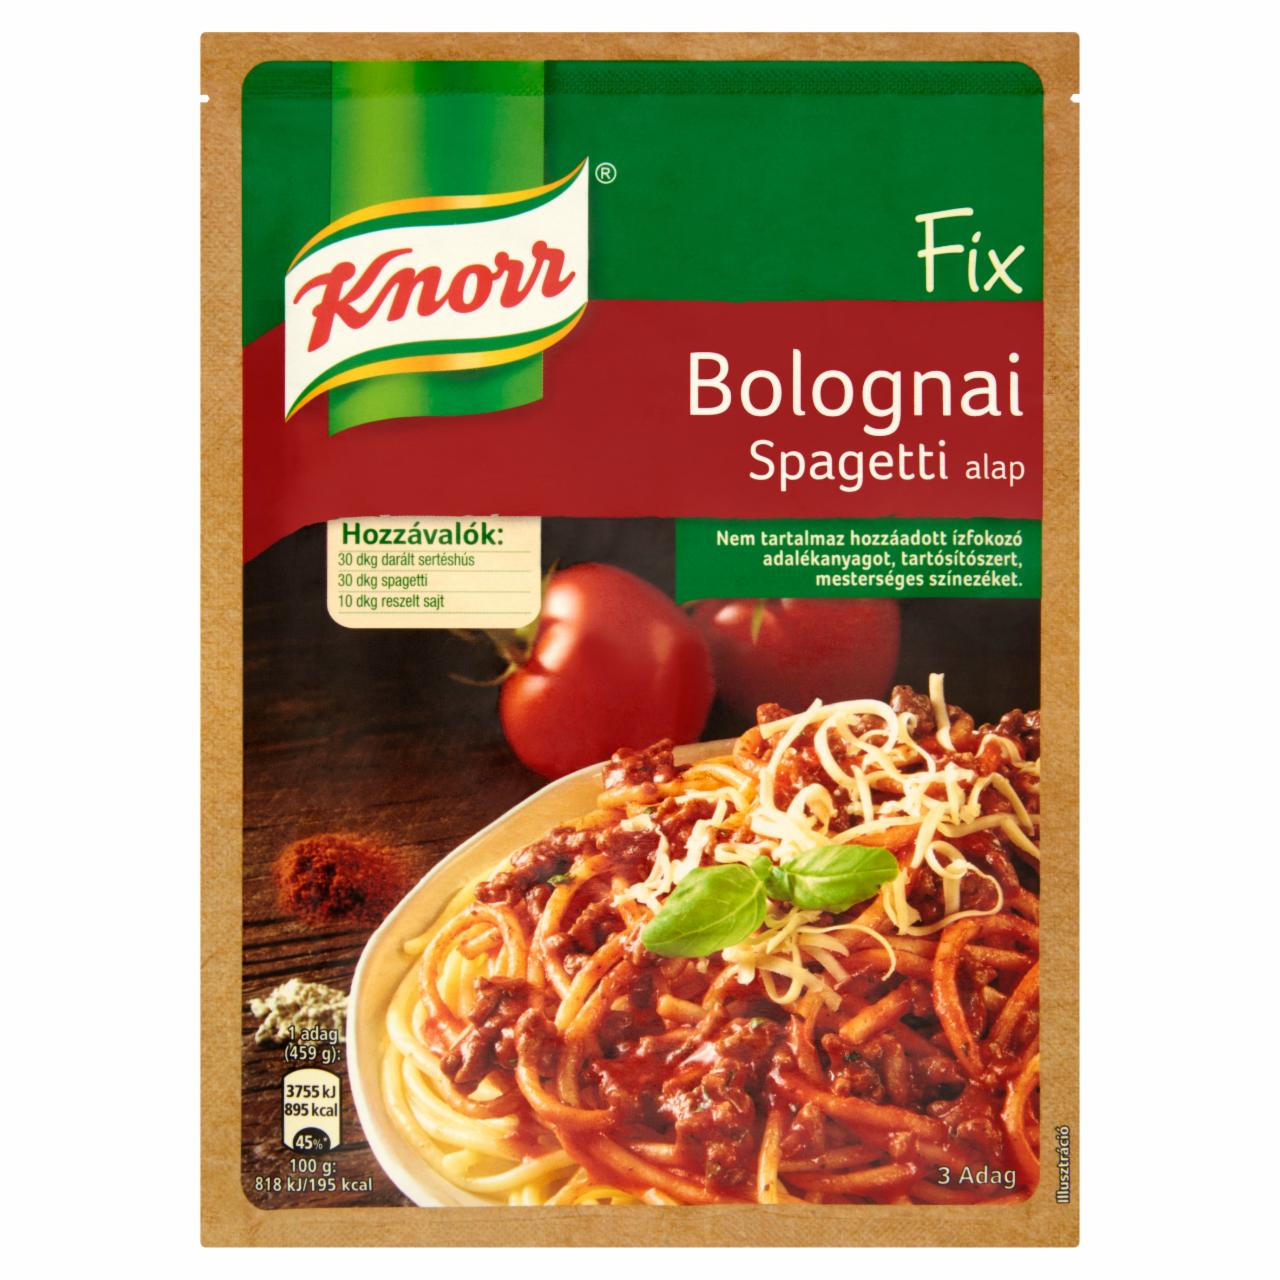 Képek - Knorr bolognai spagetti alap 59 g